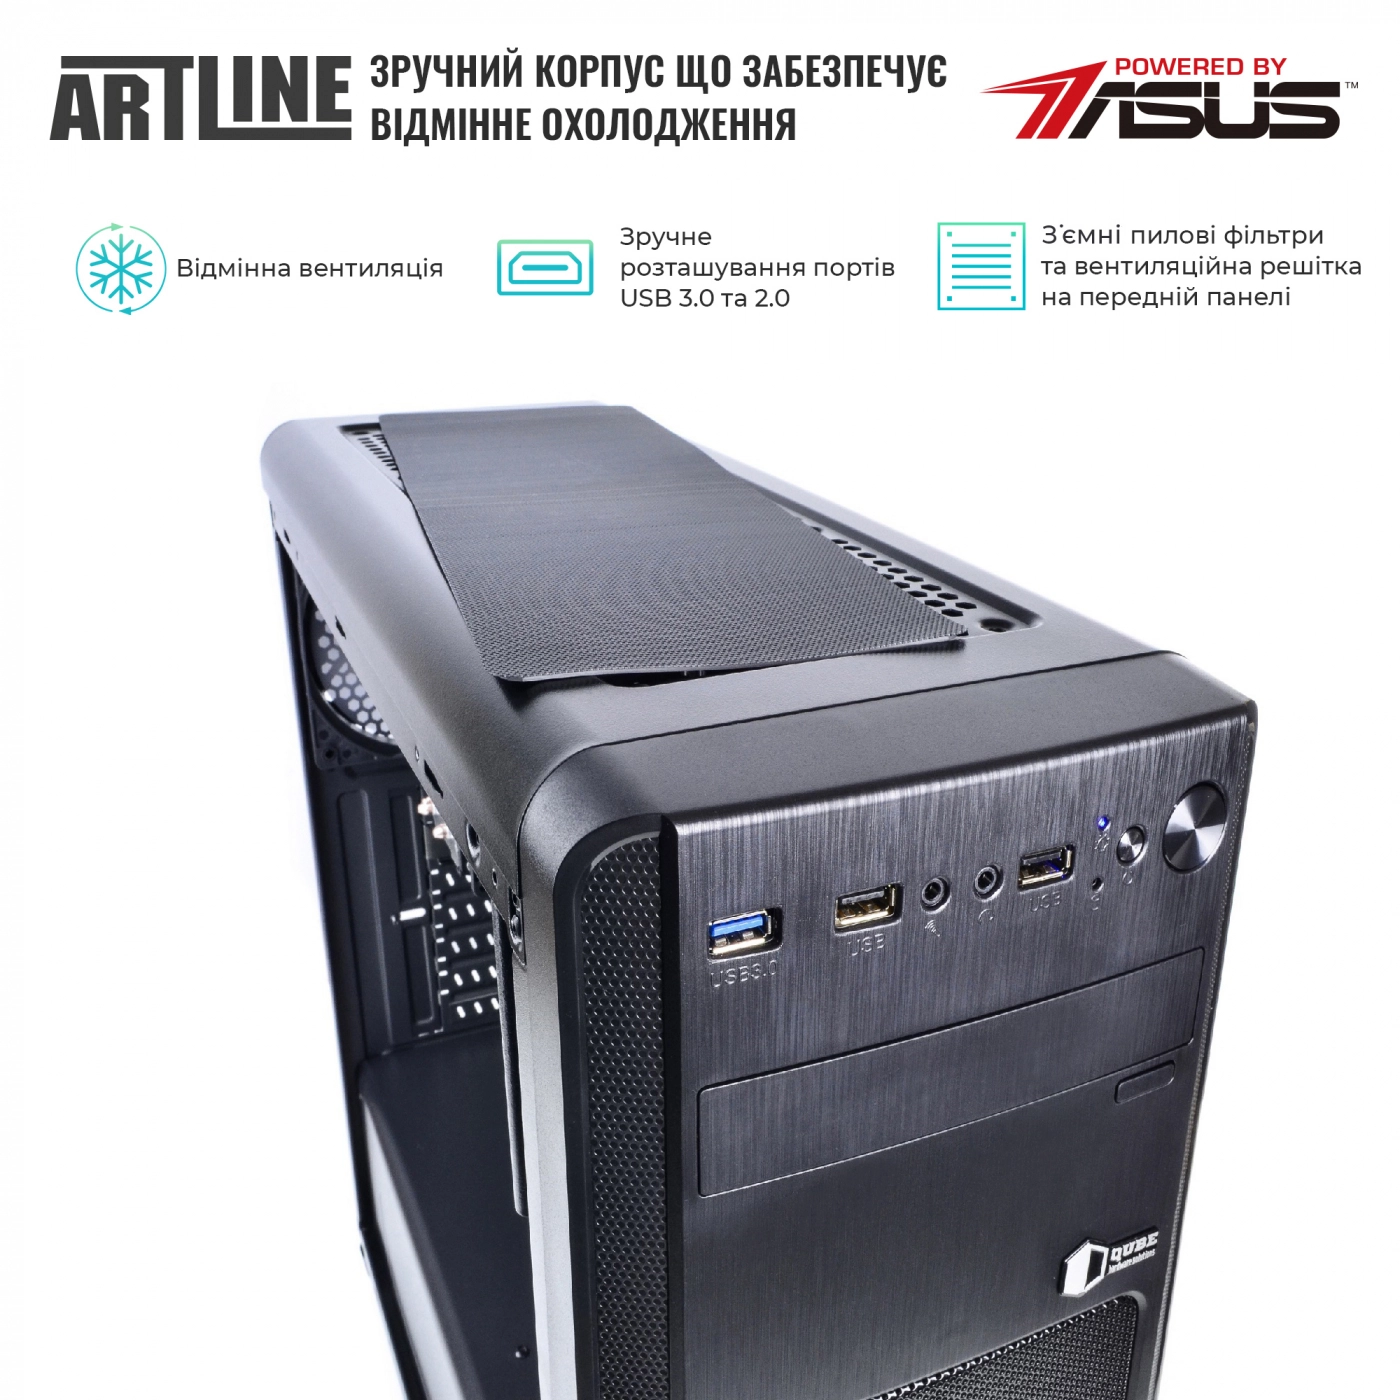 Купить Сервер ARTLINE Business T27v20 - фото 4